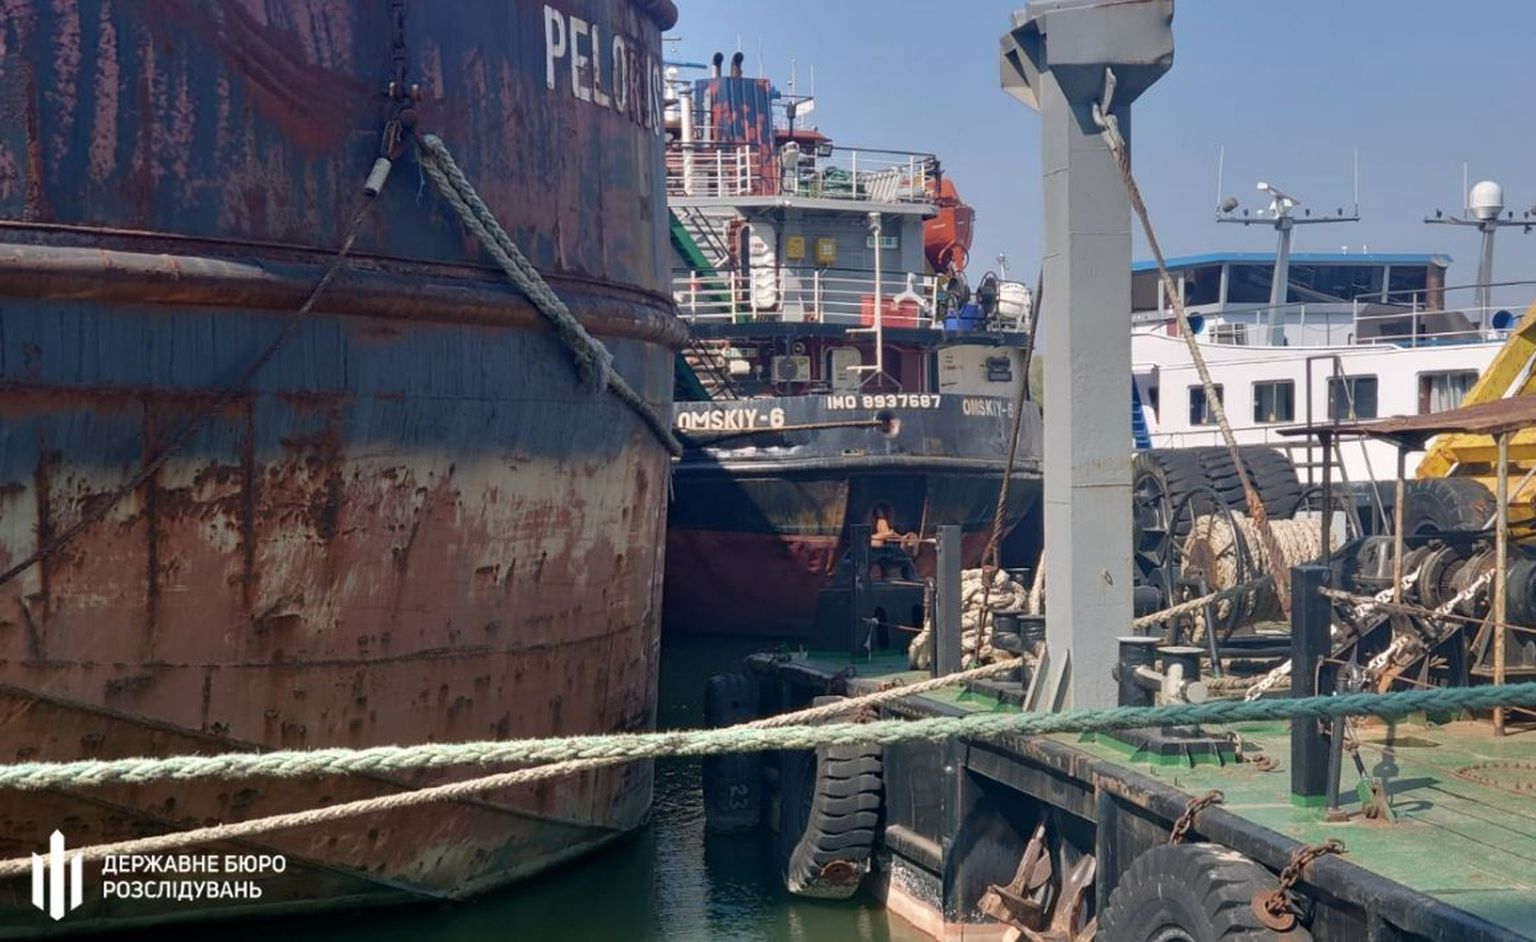 Ukraina võimude poolt kinni peetud Venemaa laevad